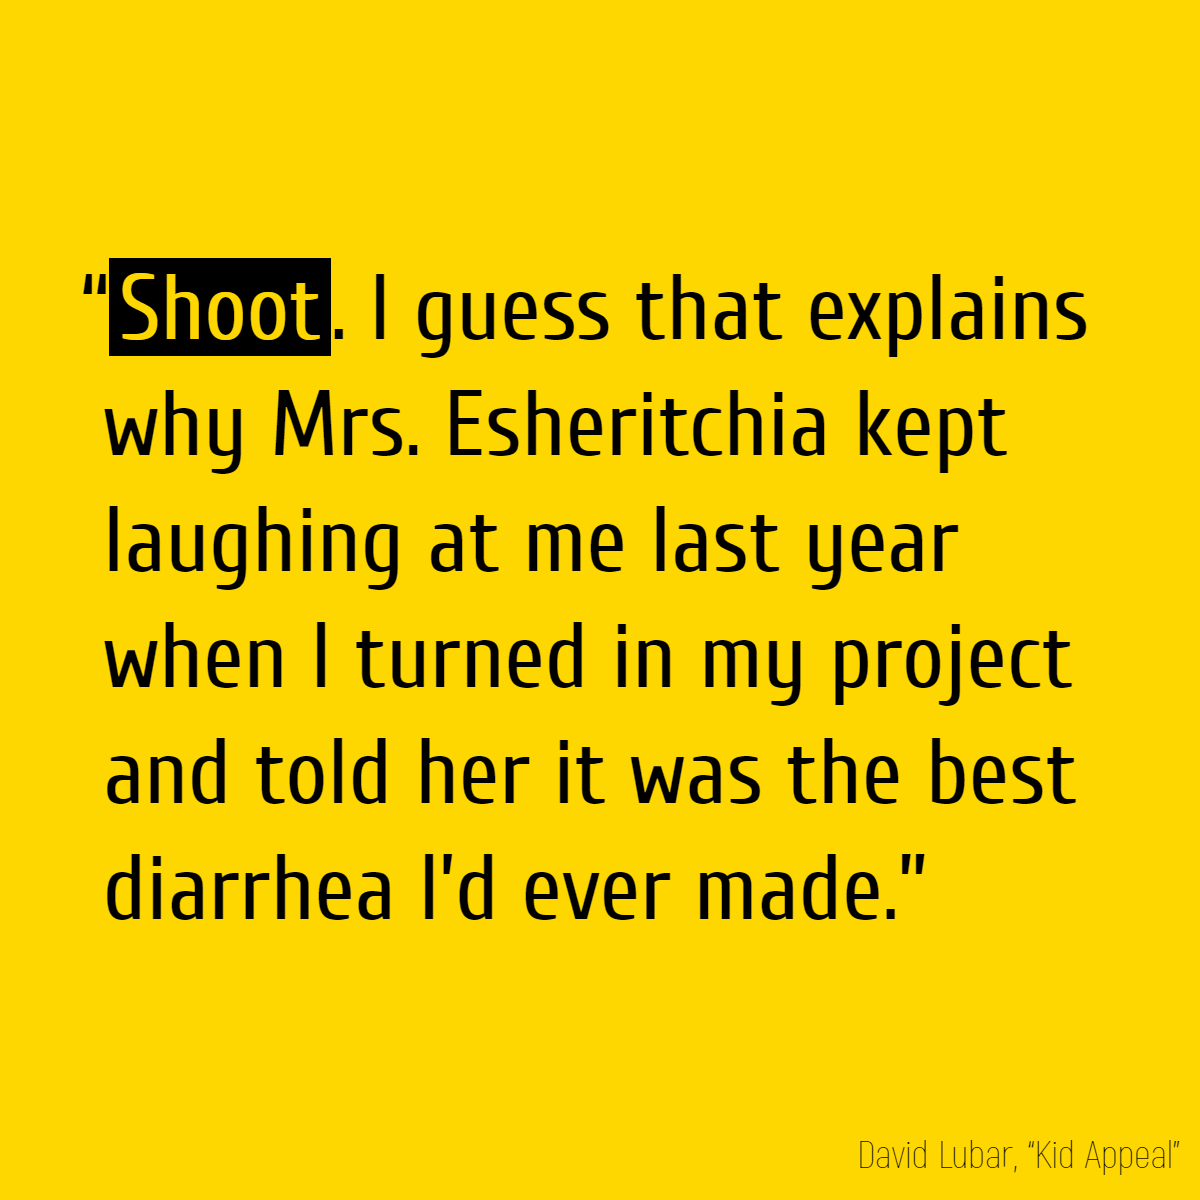 “</b>Shoot</b>. I guess that explains why Mrs. Esheritchia kept laughing at me last year when I turned in my project and told her it was the best diarrhea I’d ever made.”» /></p>
<p>Оказалось, что <b>«shoot»</b> в устах американского школьника — эвфемизм нехорошего слова «shit». Точно так же в устах русского школьника ёмкое слово на букву «б» превращается в <b>«блин»</b>, когда рядом его мама.</p>
<p>Запоминается оно само собой благодаря похожему звучанию слов (и диарее), а чтобы точно ничего не забыть, представьте что-нибудь такое:</p>
<p>— Дорогой, я беременна!<br />
— Поздравляю. А вы кто?<br />
— <b>Блин</b>, ну что за <b>шут</b>ки! Это же я, твоя зайка!<br />
— Извините, вы ошиблись номером.</p>
<p>P.S. Кстати, <b>«I’m positive»</b> значит <b>«я уверен на все сто»</b>. Возможно, кто уверен в себе, тот всегда <b>на позитиве</b> (но это не точно).</p>
<p><a href=